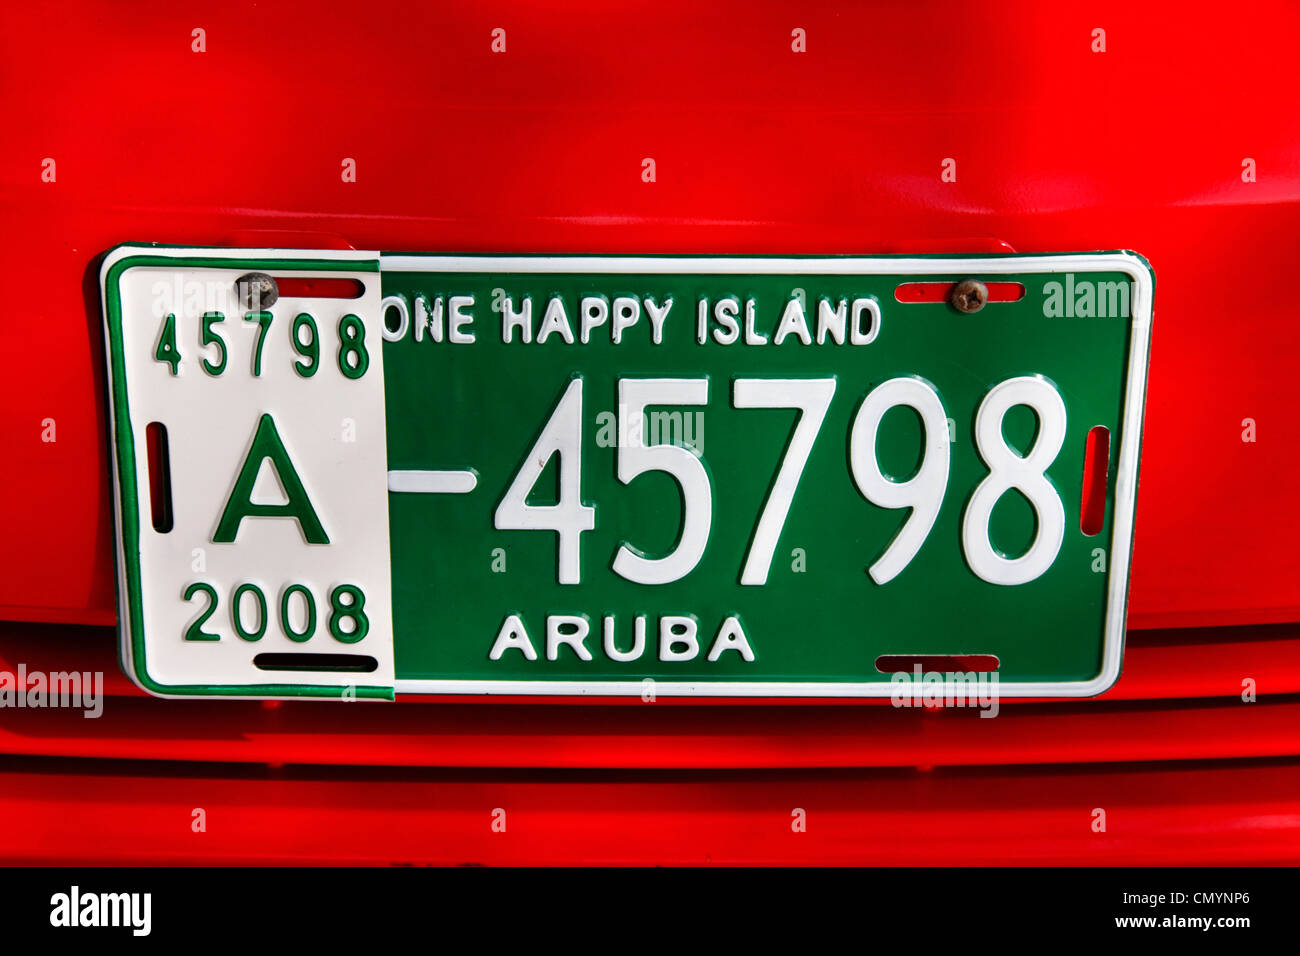 Antillen, Aruba, Nummernschild, eine glückliche Insel Stockfoto